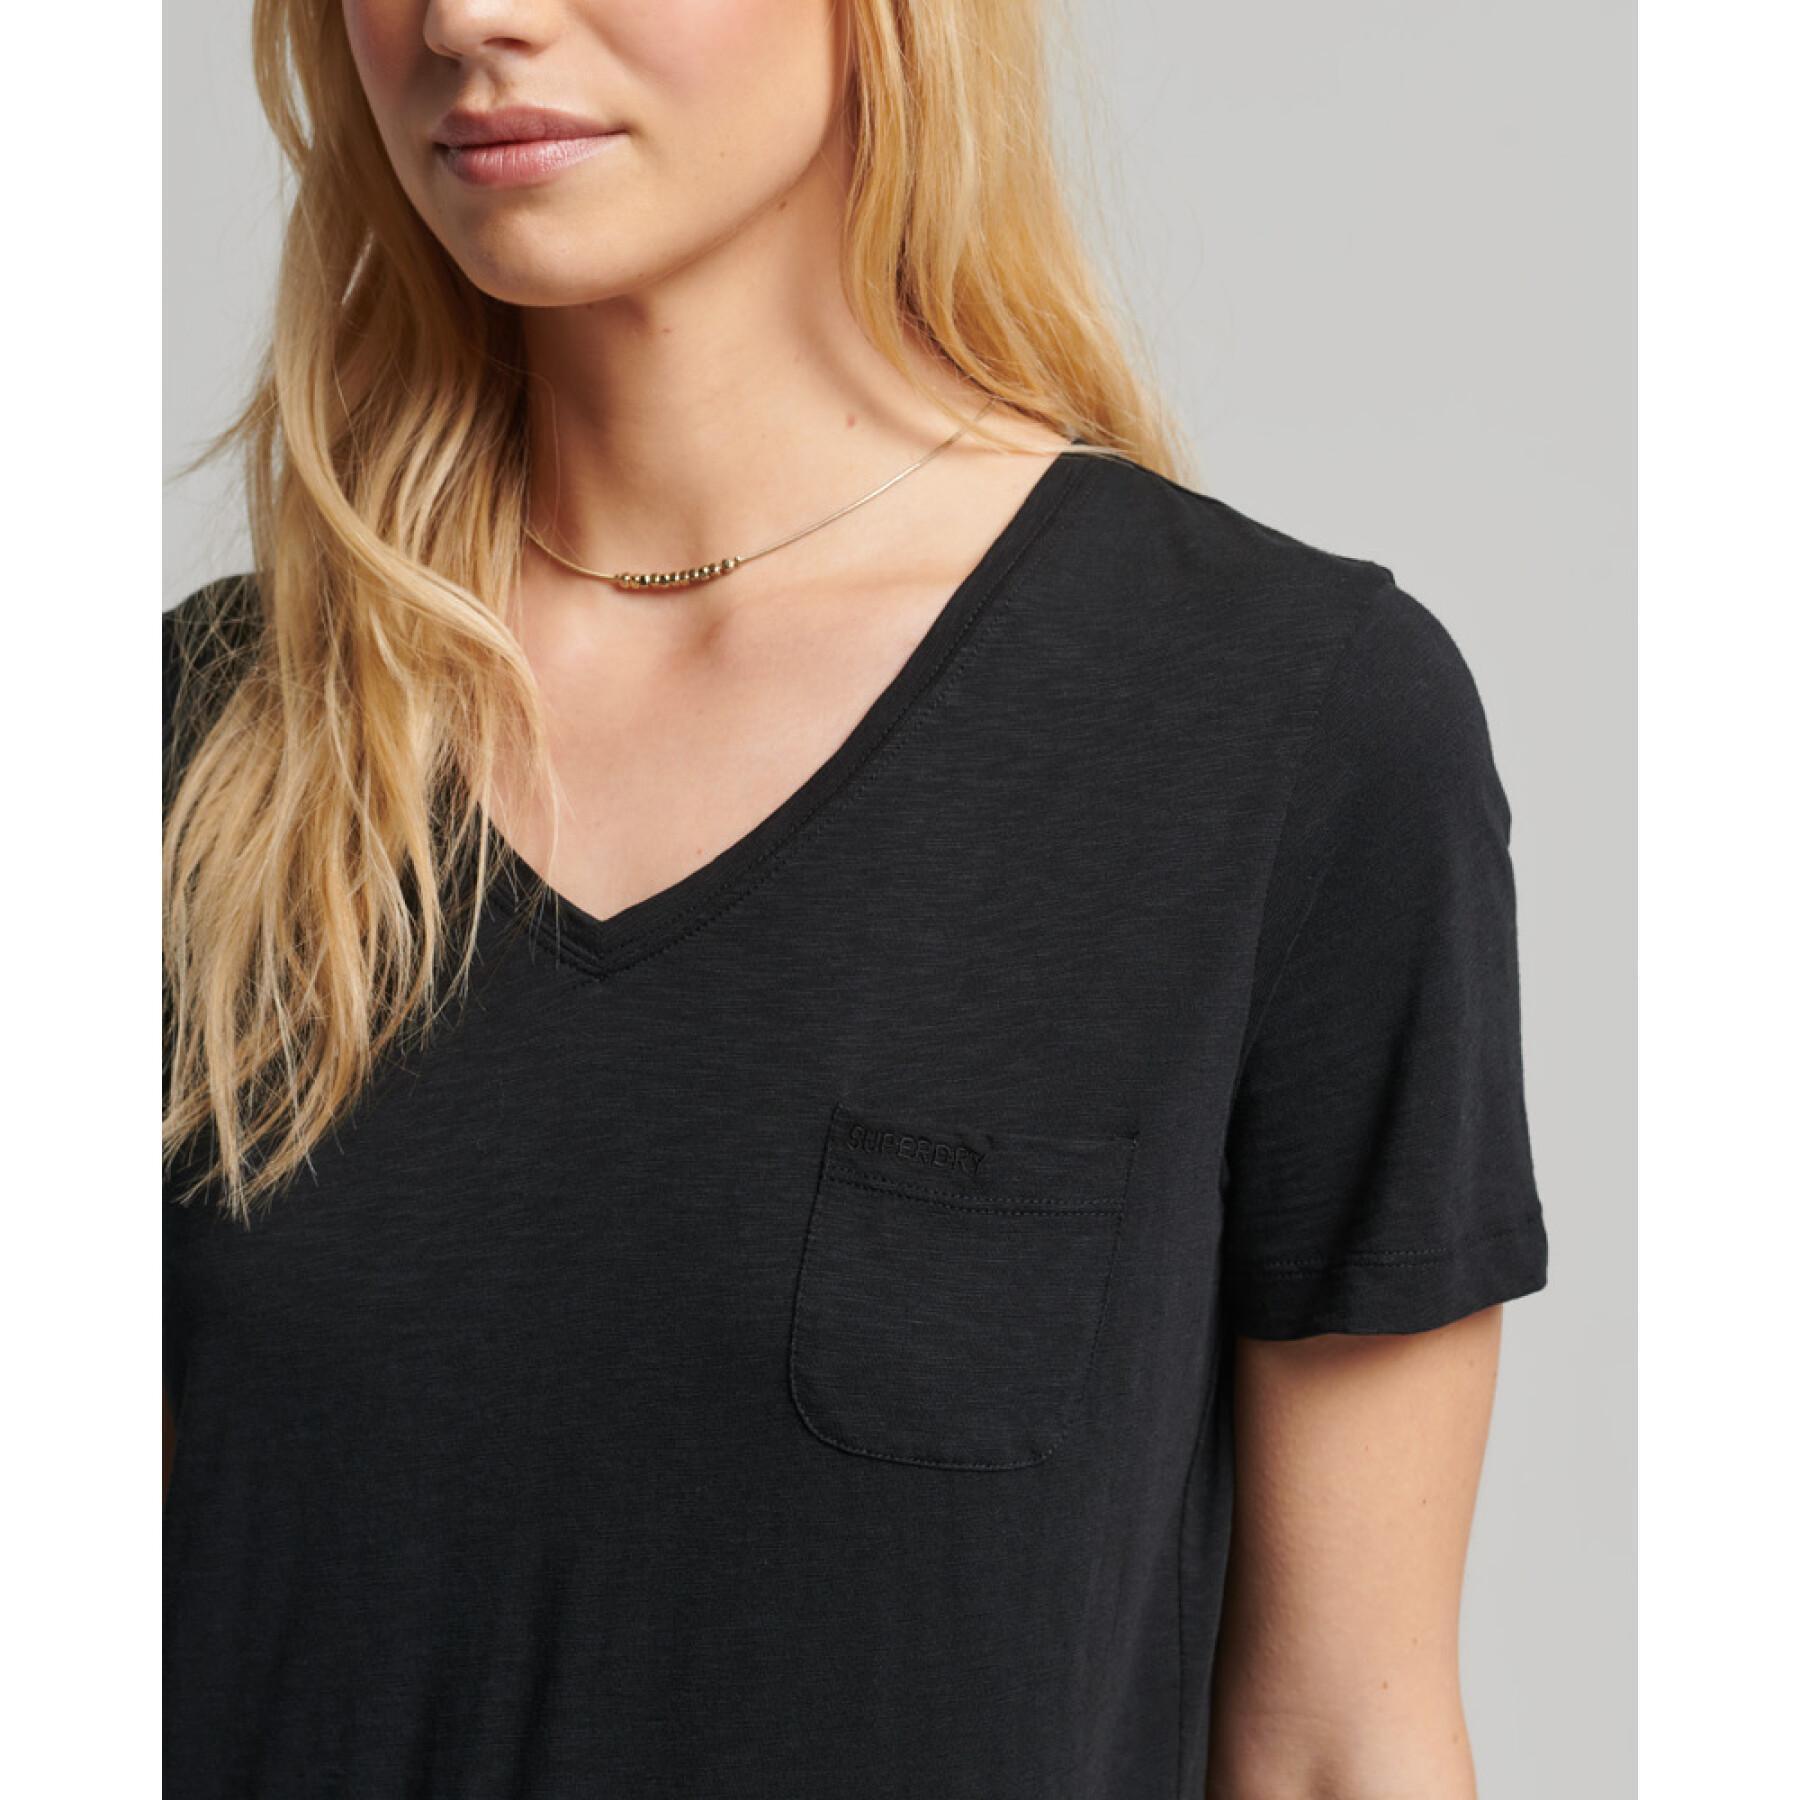 T-shirt donna con scollo a V e tasca sul petto Superdry Studios